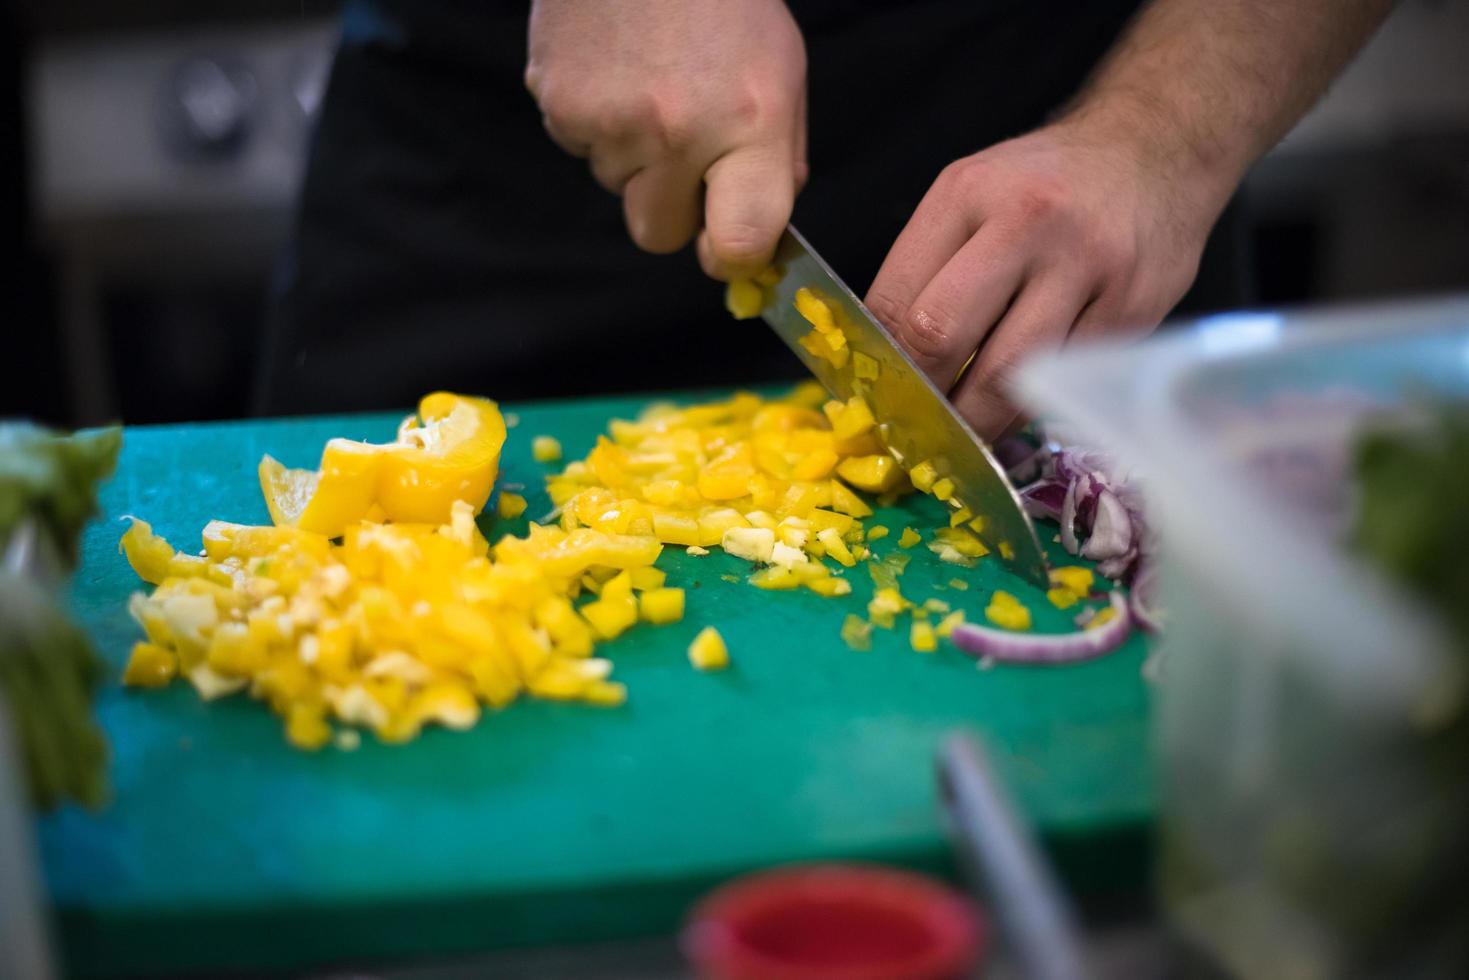 chef manos cortando verduras frescas y deliciosas foto